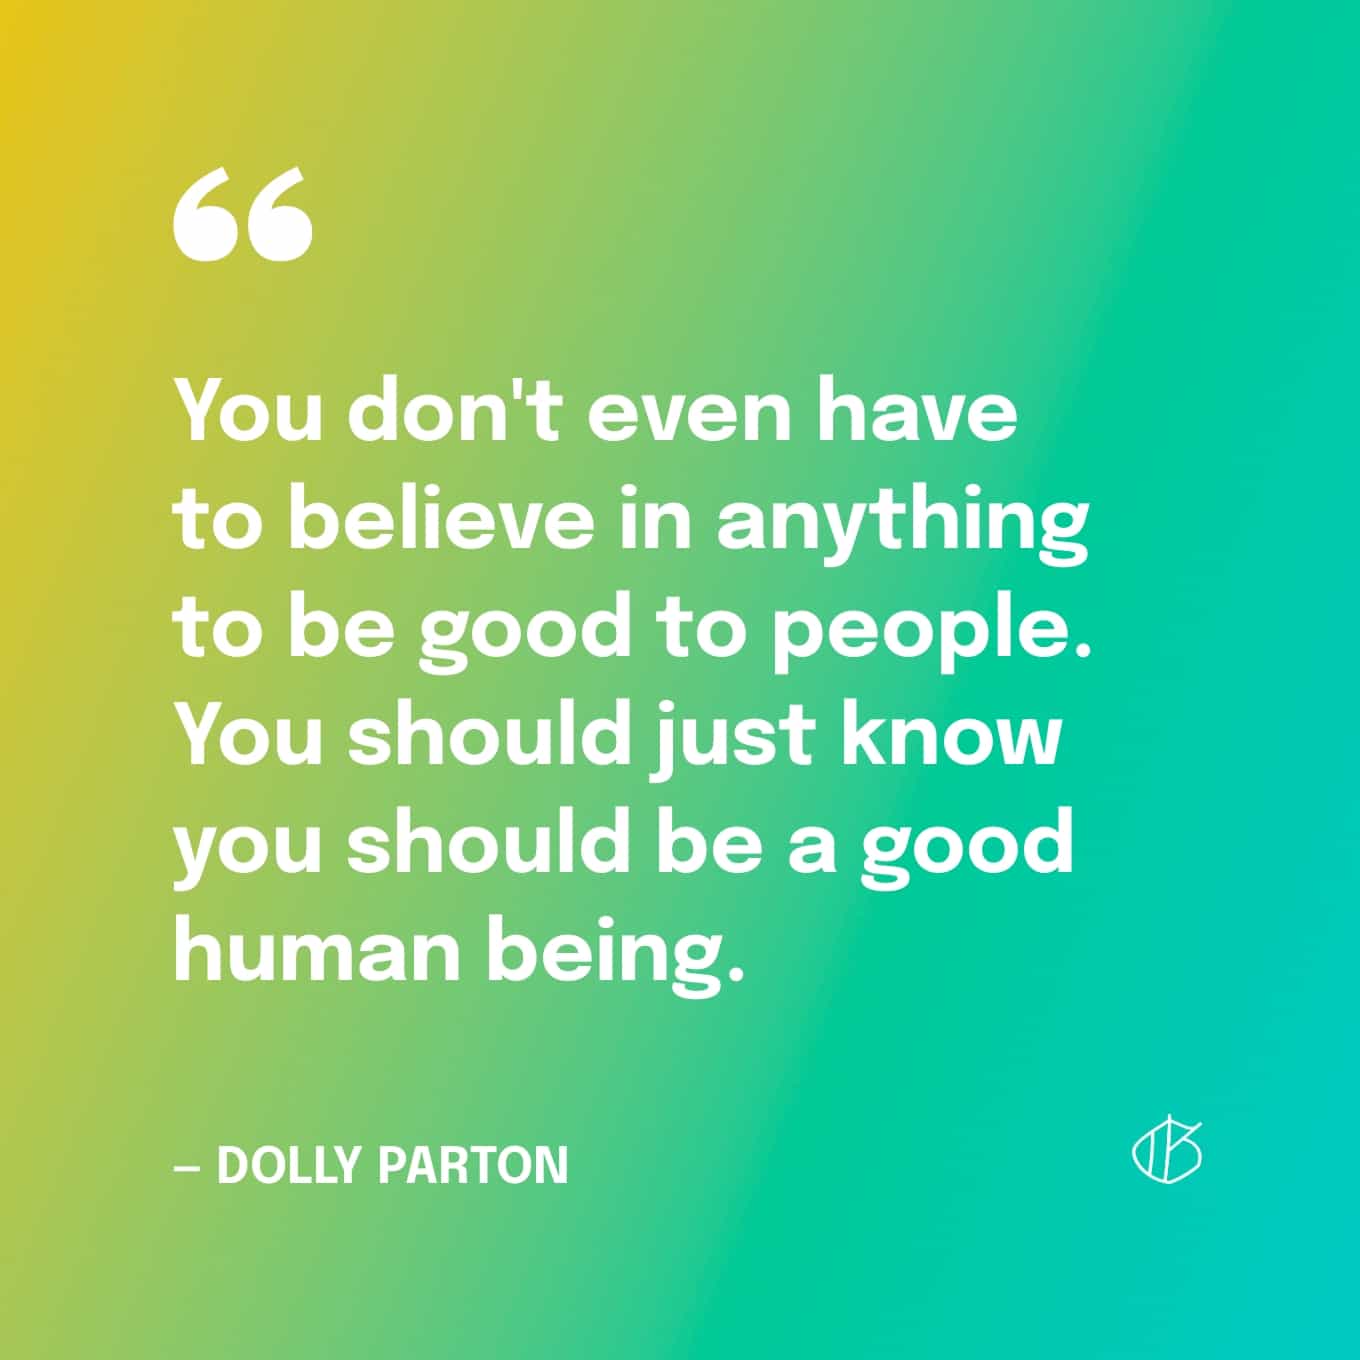 Dolly Parton Quote Wallpaper: Je hoeft niet eens in iets te geloven om goed te zijn voor mensen. Je moet gewoon weten dat je een goed mens moet zijn.